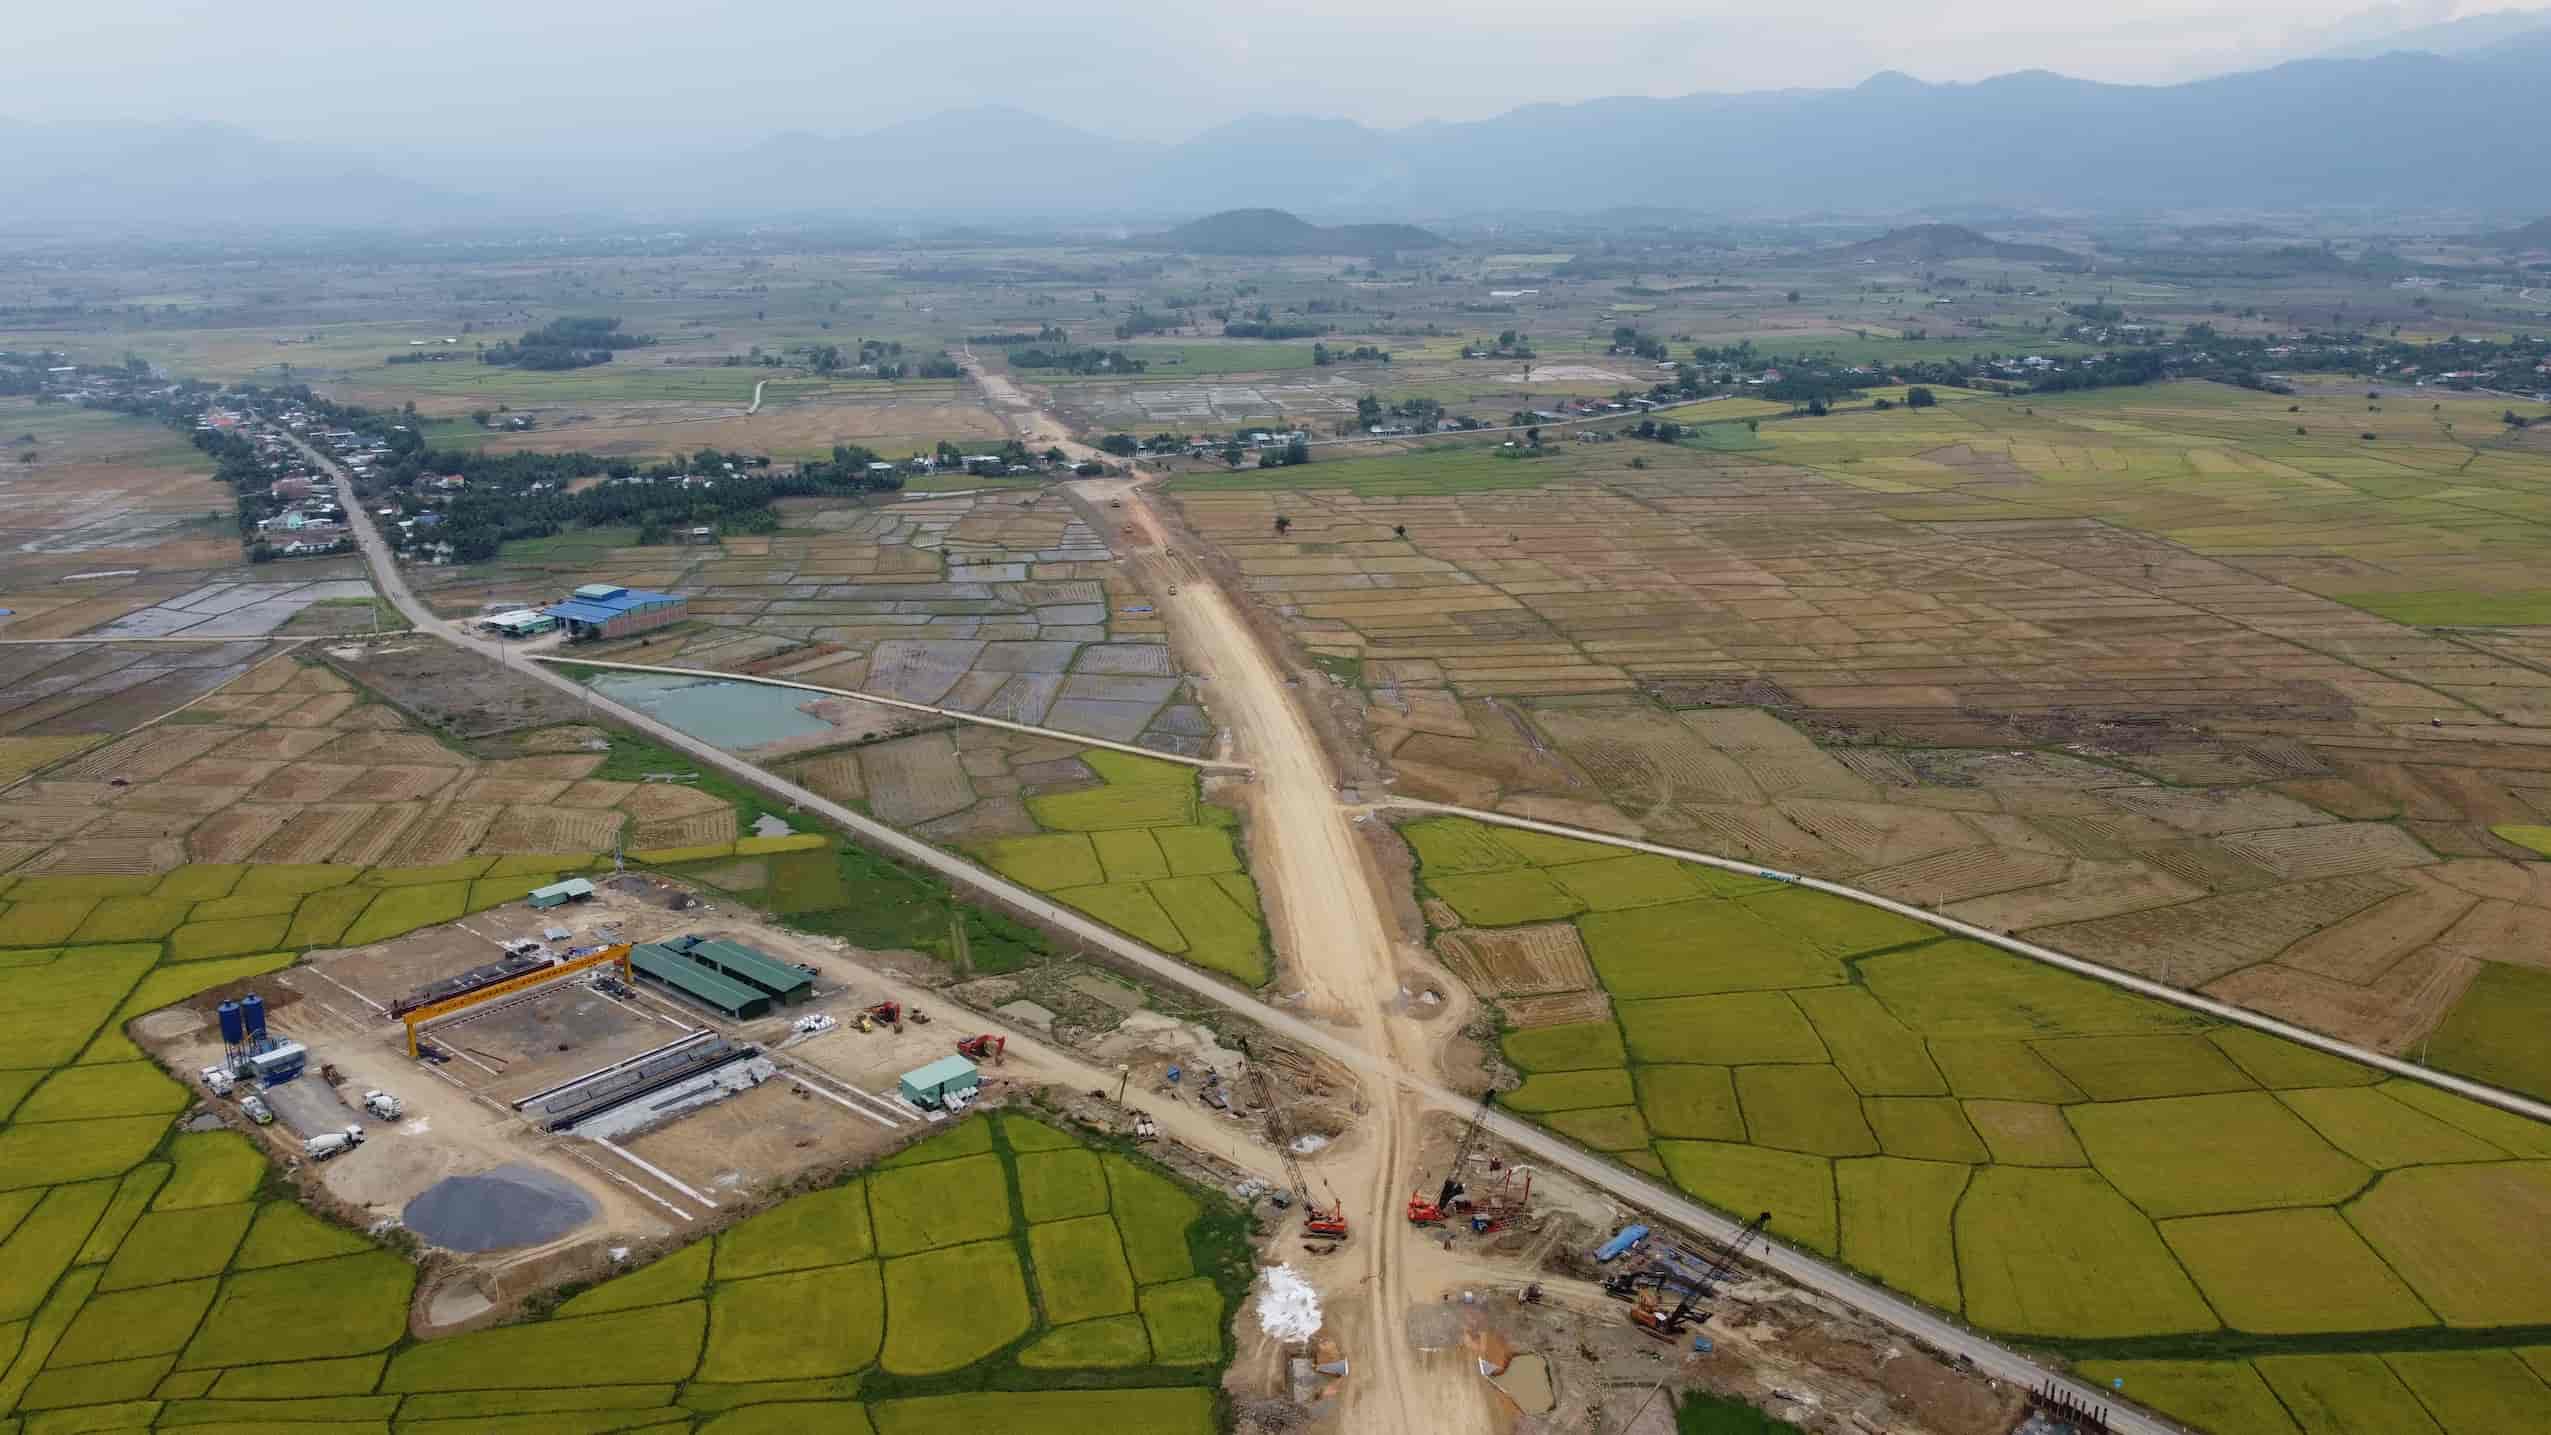 Giai đoạn 1 dự án cao tốc Khánh Hòa - Buôn Ma Thuột mới chỉ giải ngân 107 tỉ đồng trên tổng số 1000 tỉ đồng. Ảnh: Hữu Long  